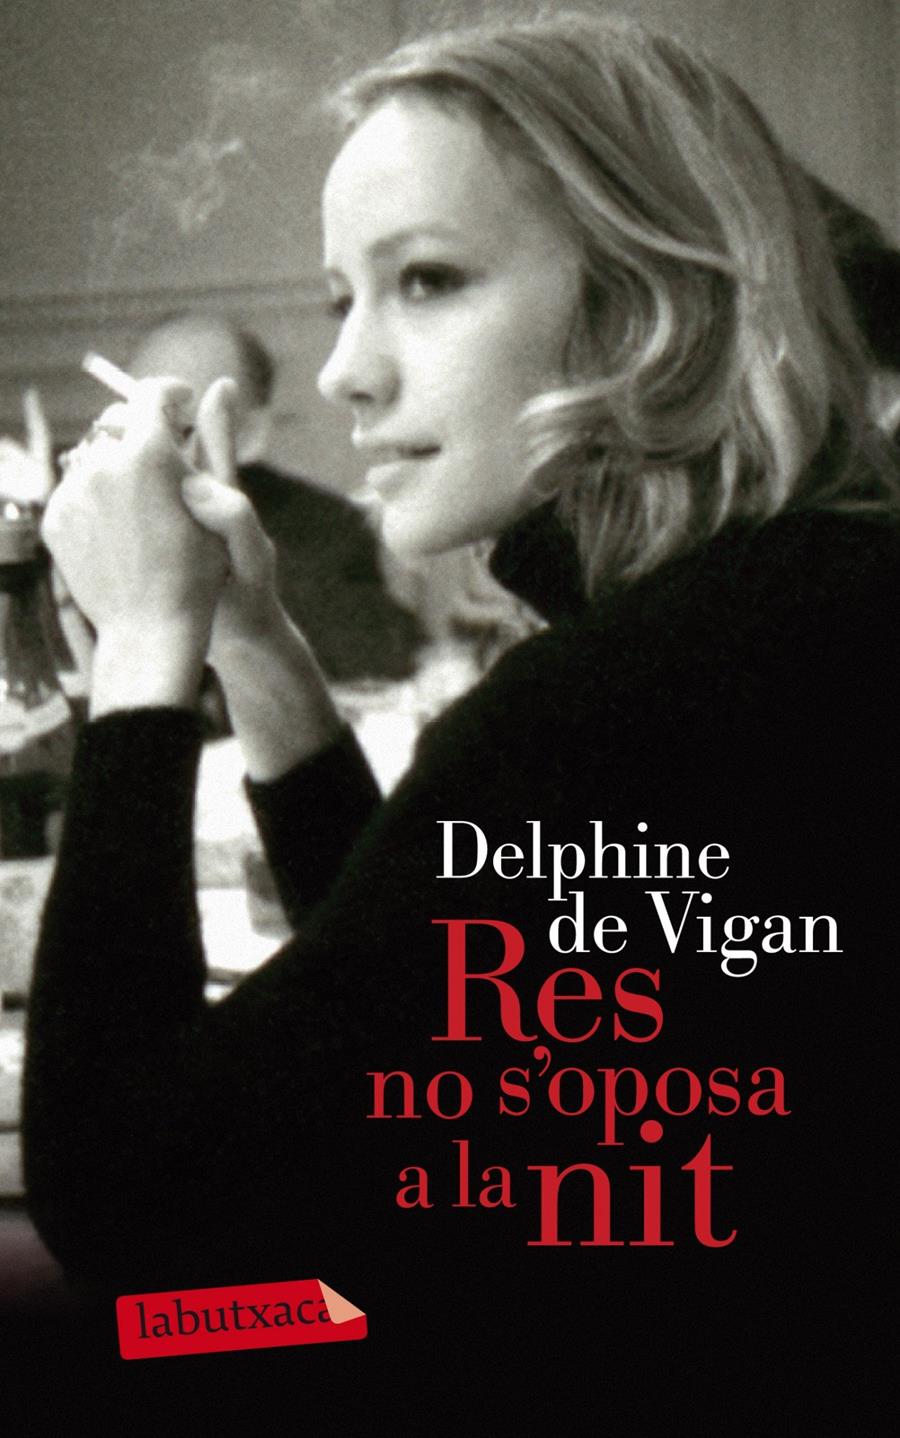 Comentem "Res no s'oposa a la nit" de Delphine de Vigan - 